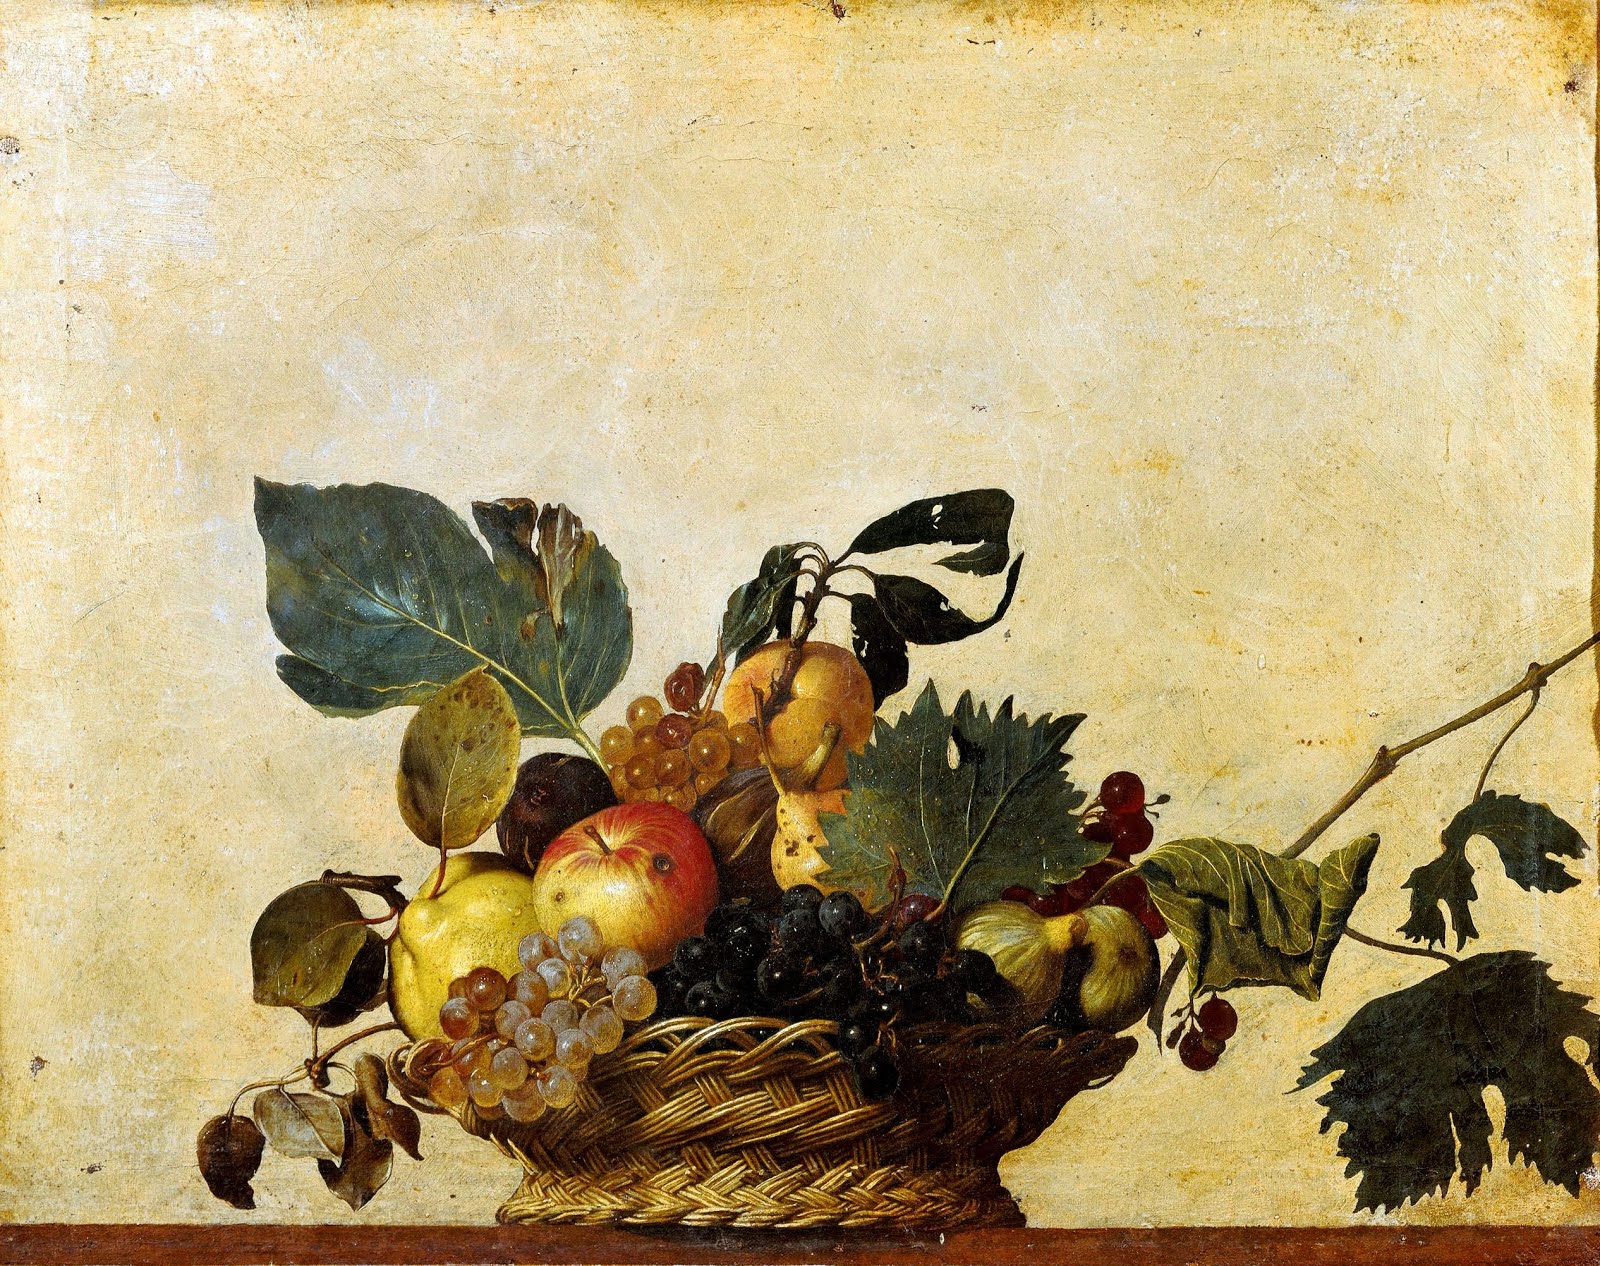 Caravaggio, 1599